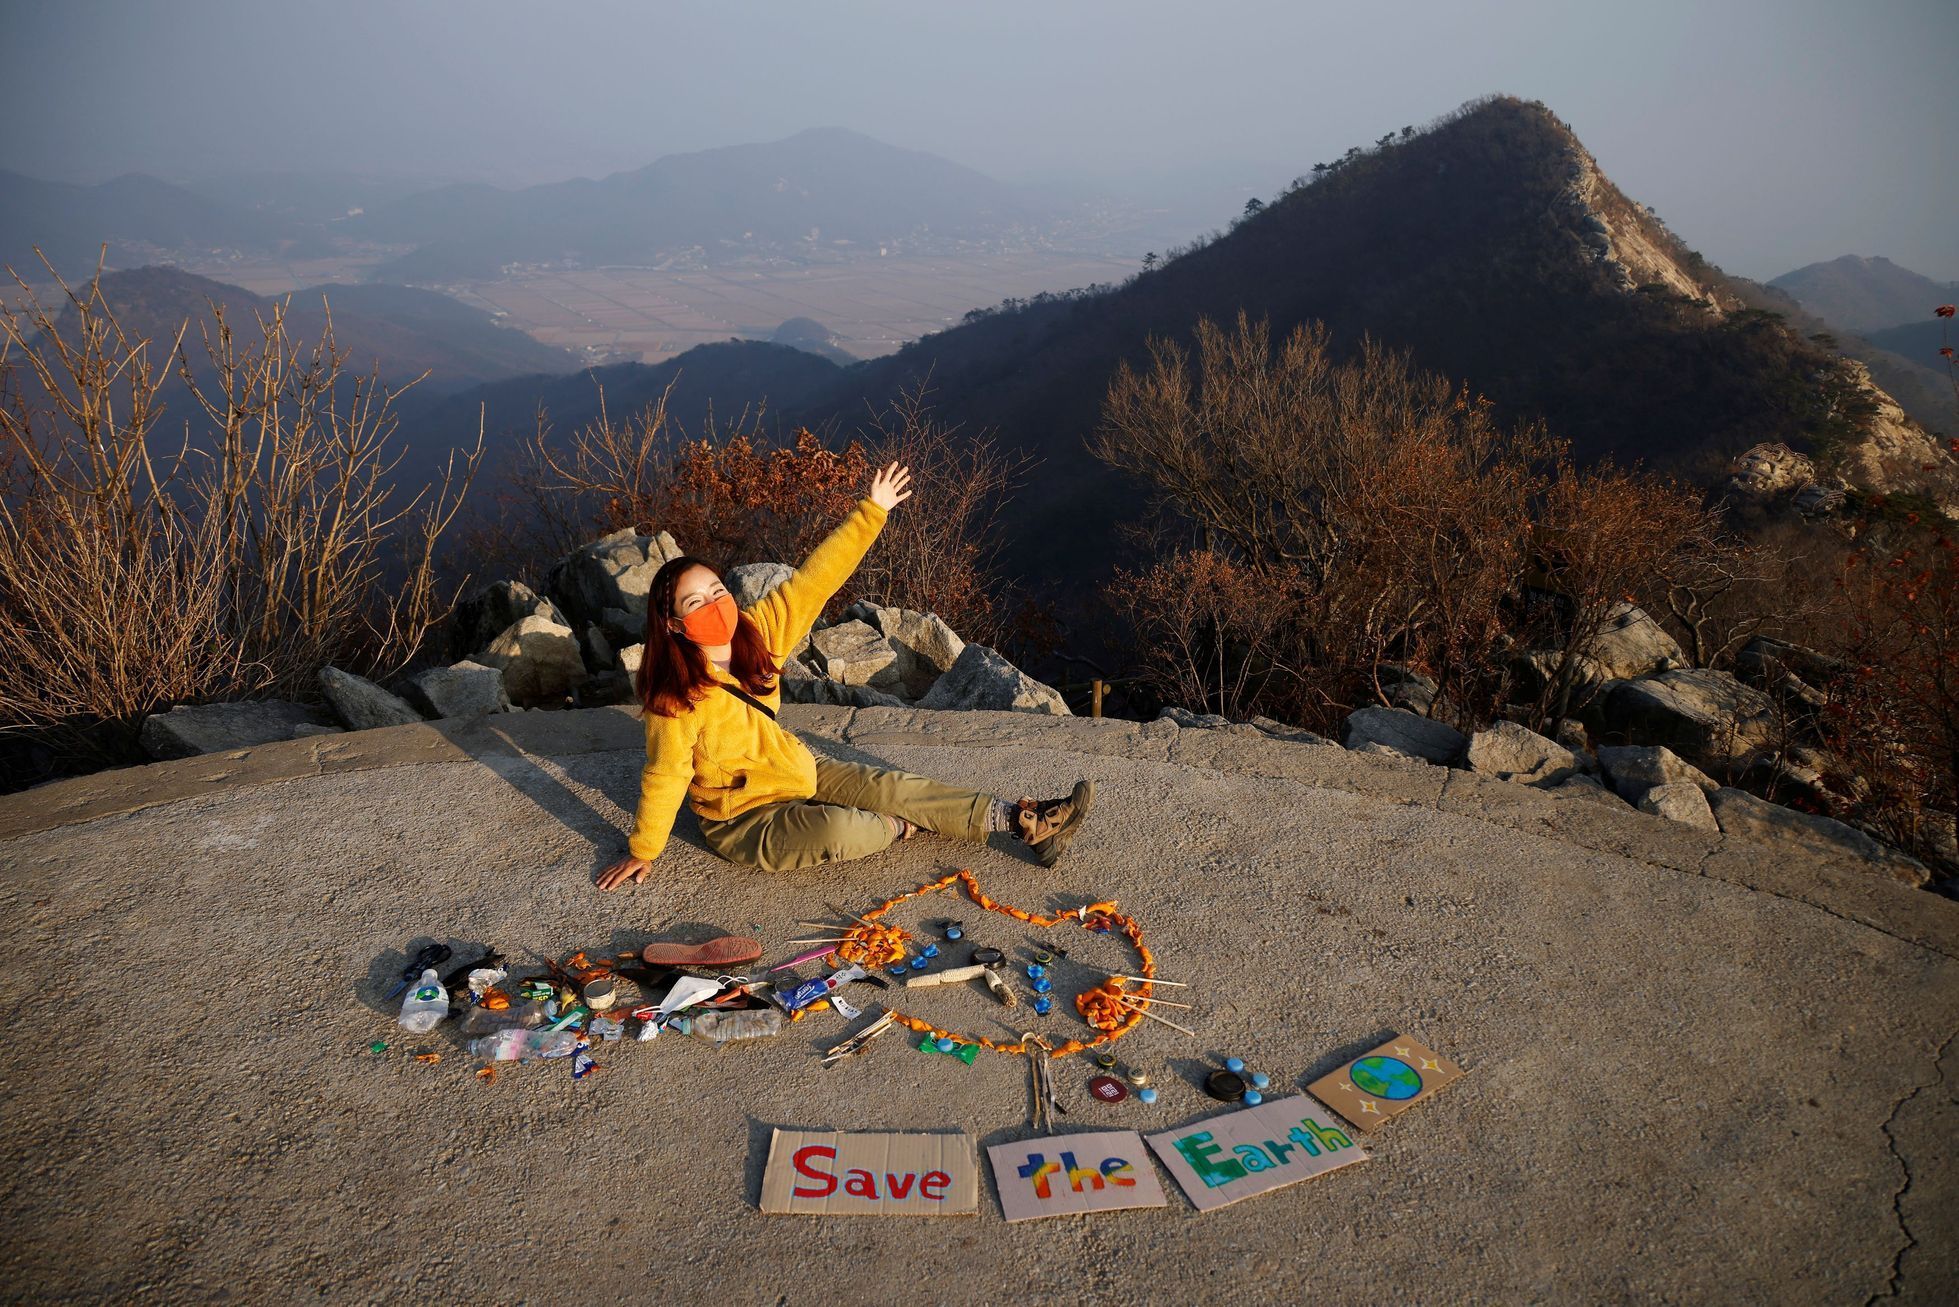 Kim Kange-eunová založila spolek Clean Hikers, jehož členové v přírodě sbírají odpadky a pak z nich přímo v lesích a horách vytvářejí umělecká díla.